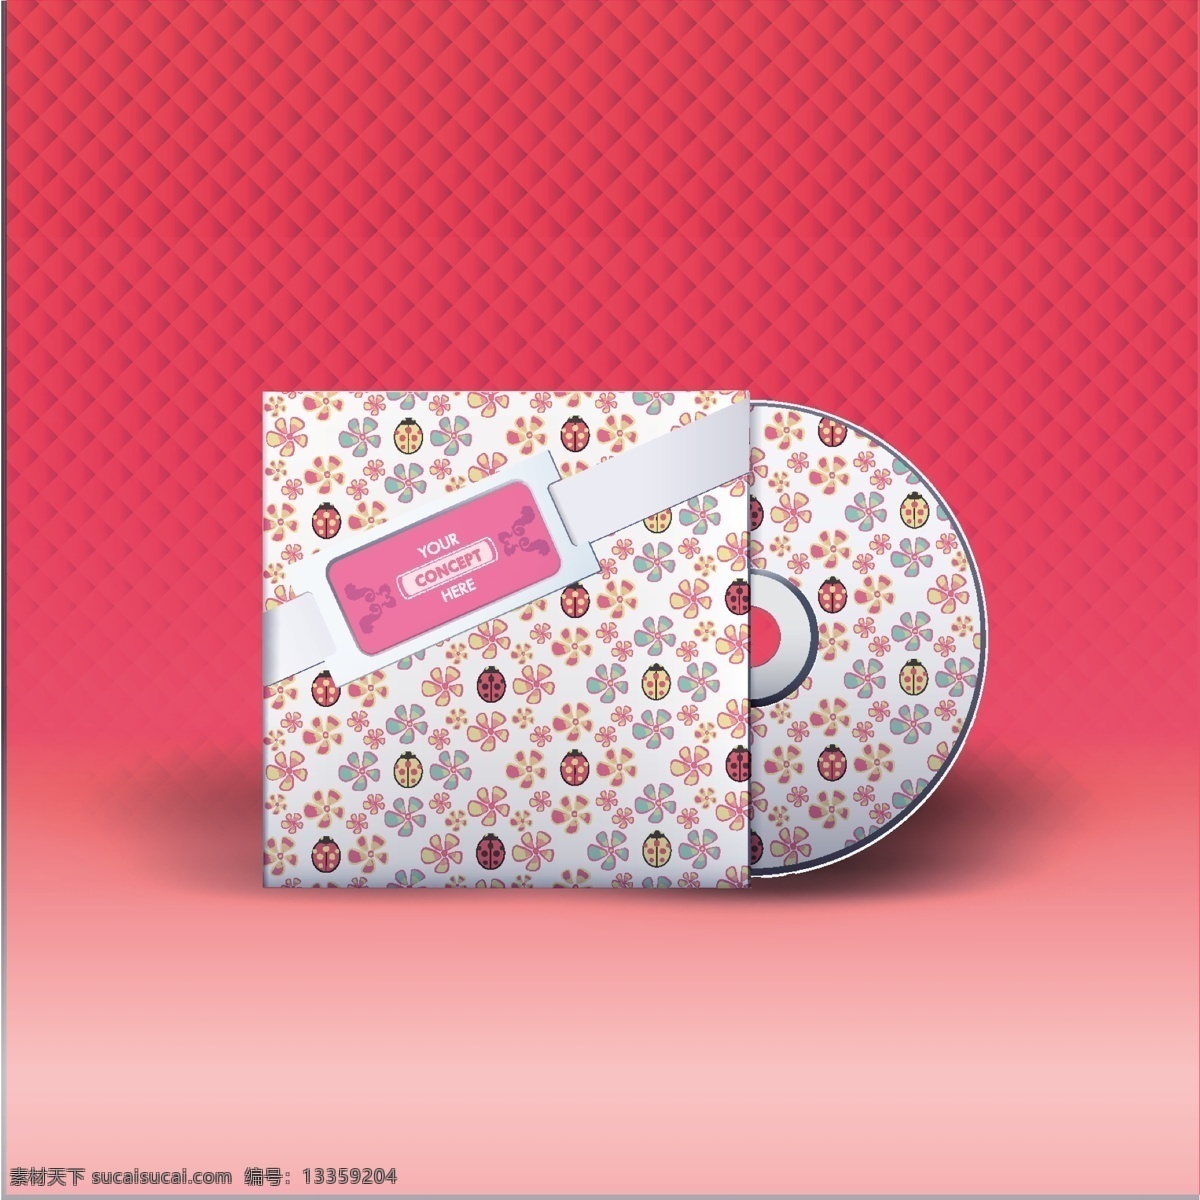 漂亮 装饰 图案 音乐 cd 光盘 背景 装饰图案 音乐cd光盘